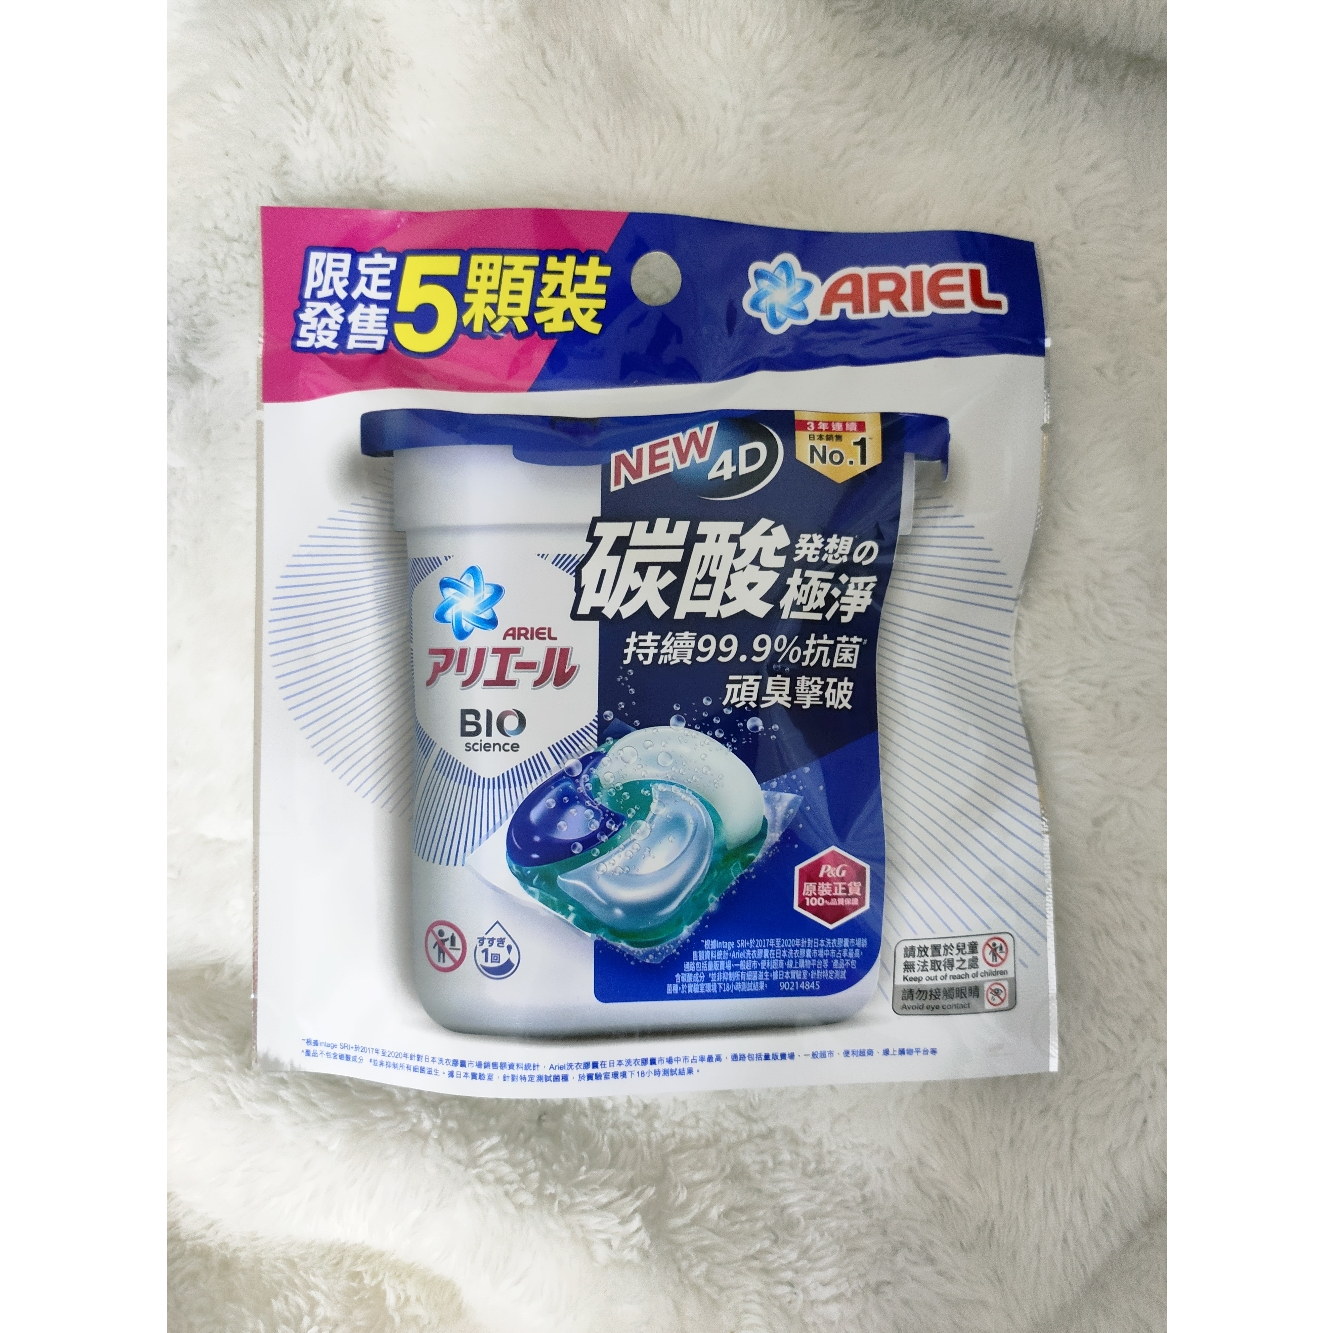 ♥台灣公司貨 新效期♥ 《現貨》 ARIEL 日本進口 4D 超濃縮 抗菌 洗衣膠囊 洗衣球 5顆袋裝 (抗菌去漬)